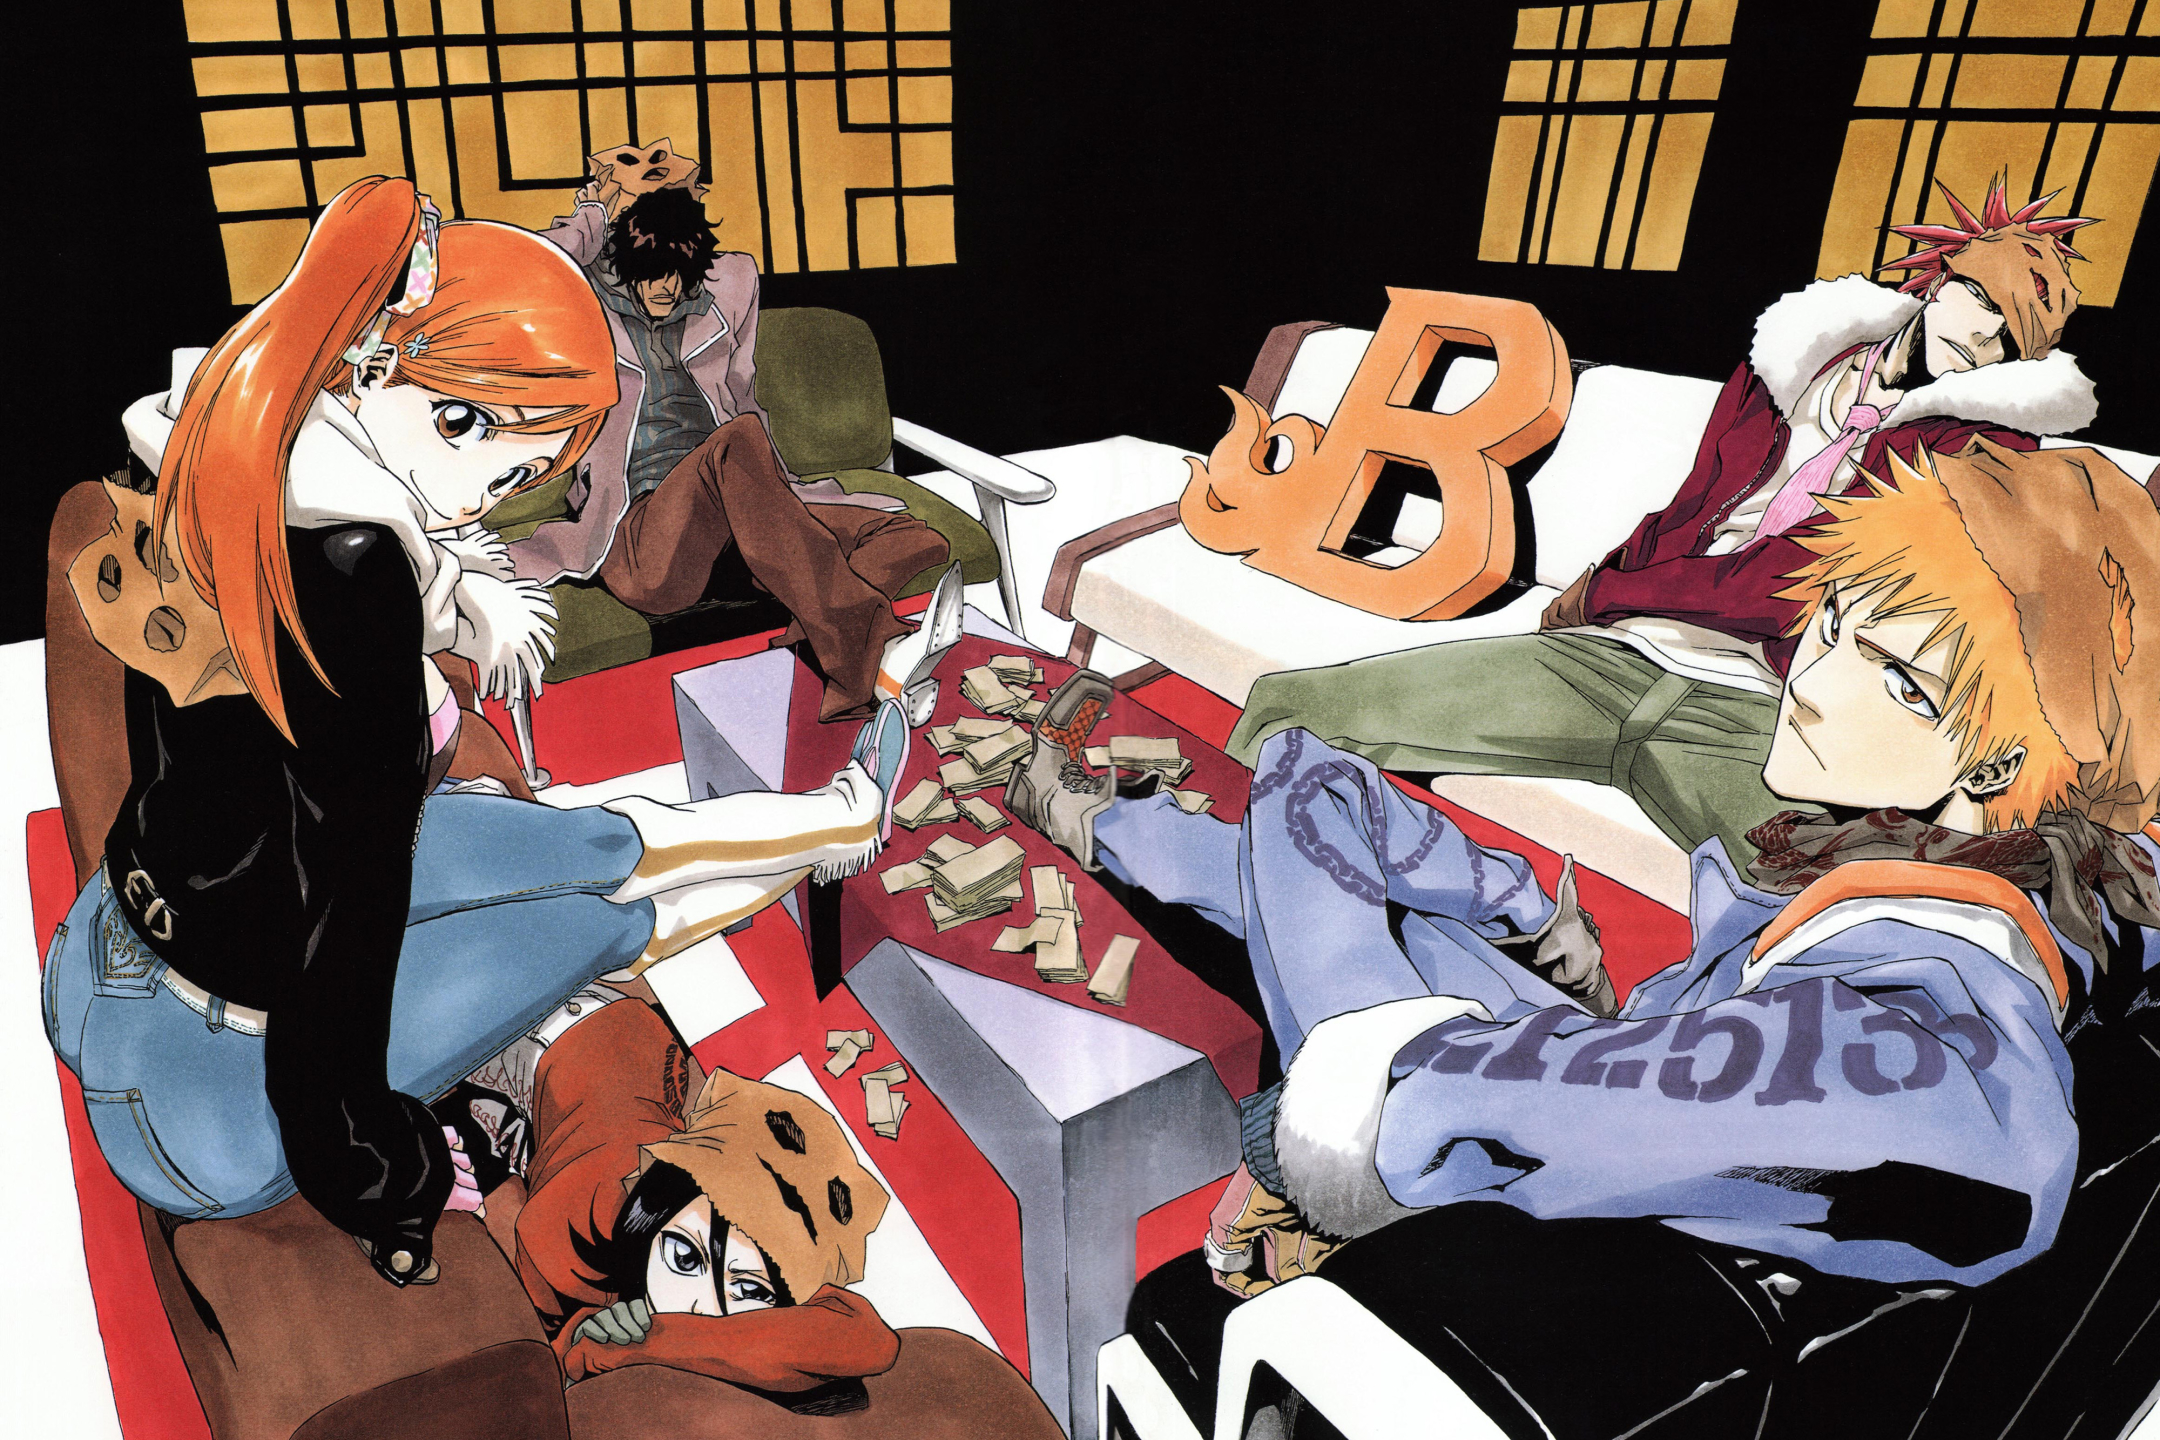 Free download wallpaper Anime, Bleach, Rukia Kuchiki, Renji Abarai, Ichigo Kurosaki, Orihime Inoue, Yasutora Sado on your PC desktop